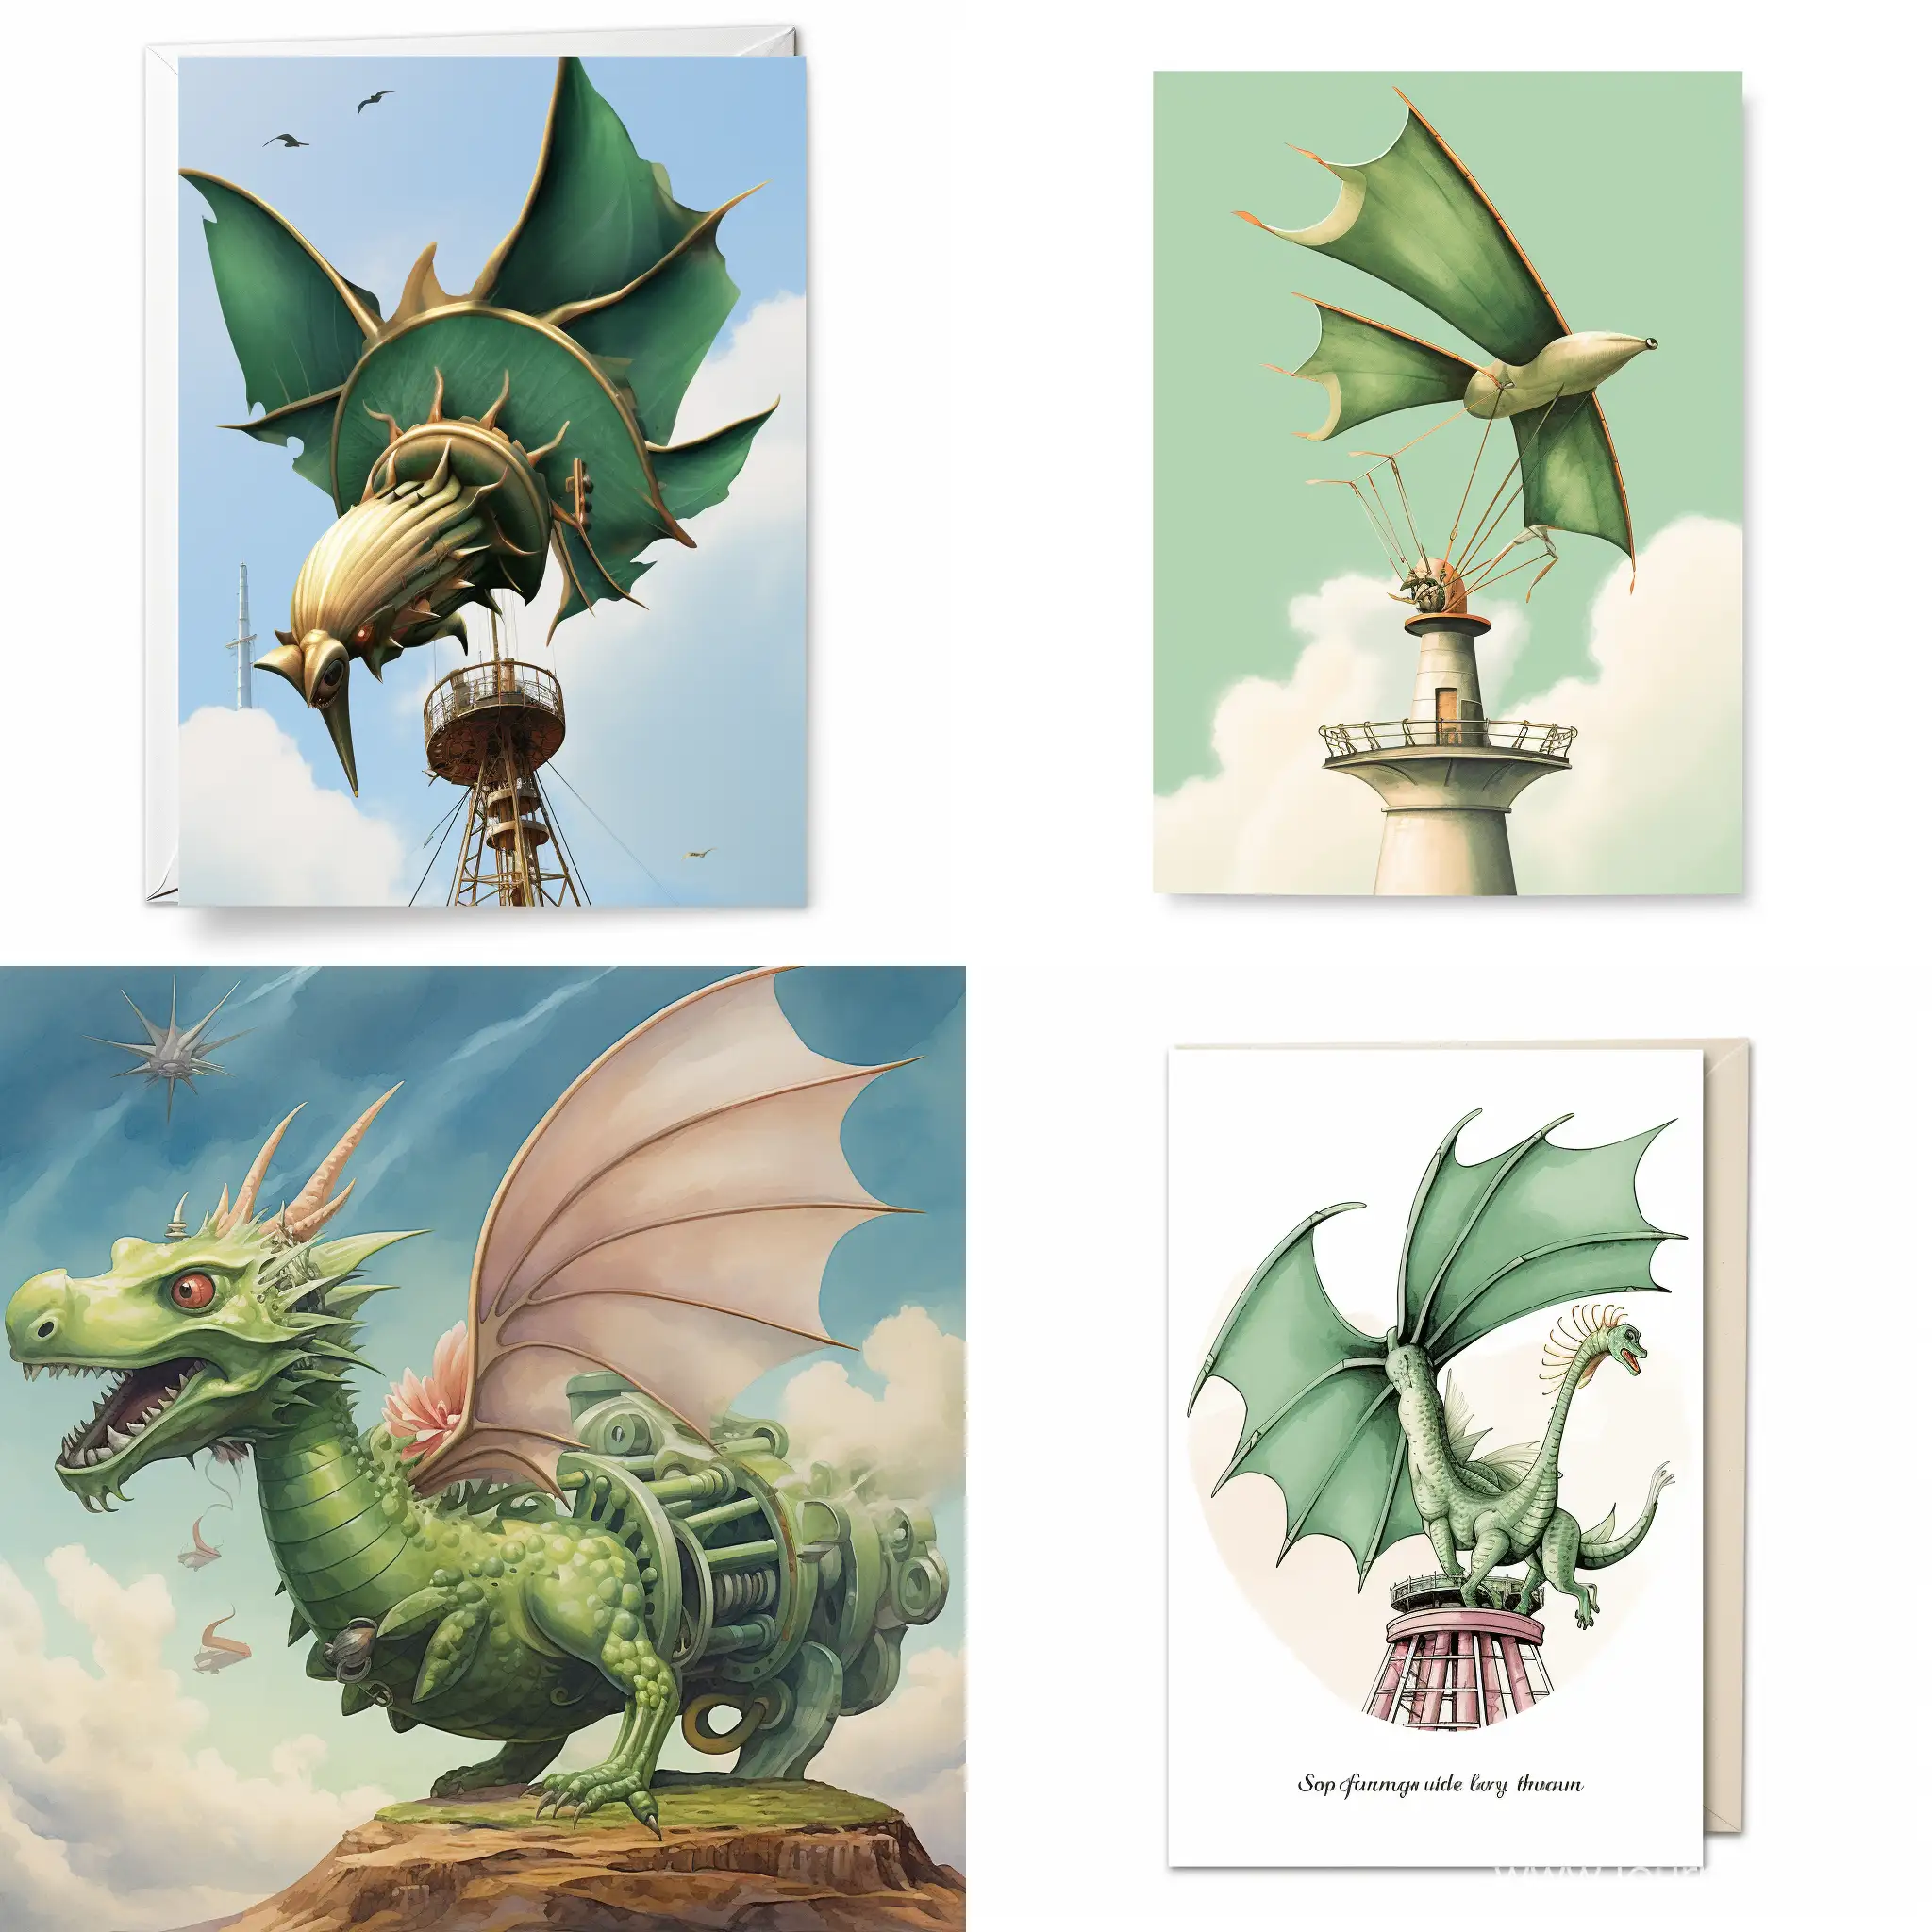 поздравительная открытка зеленый дракон летит на турбине